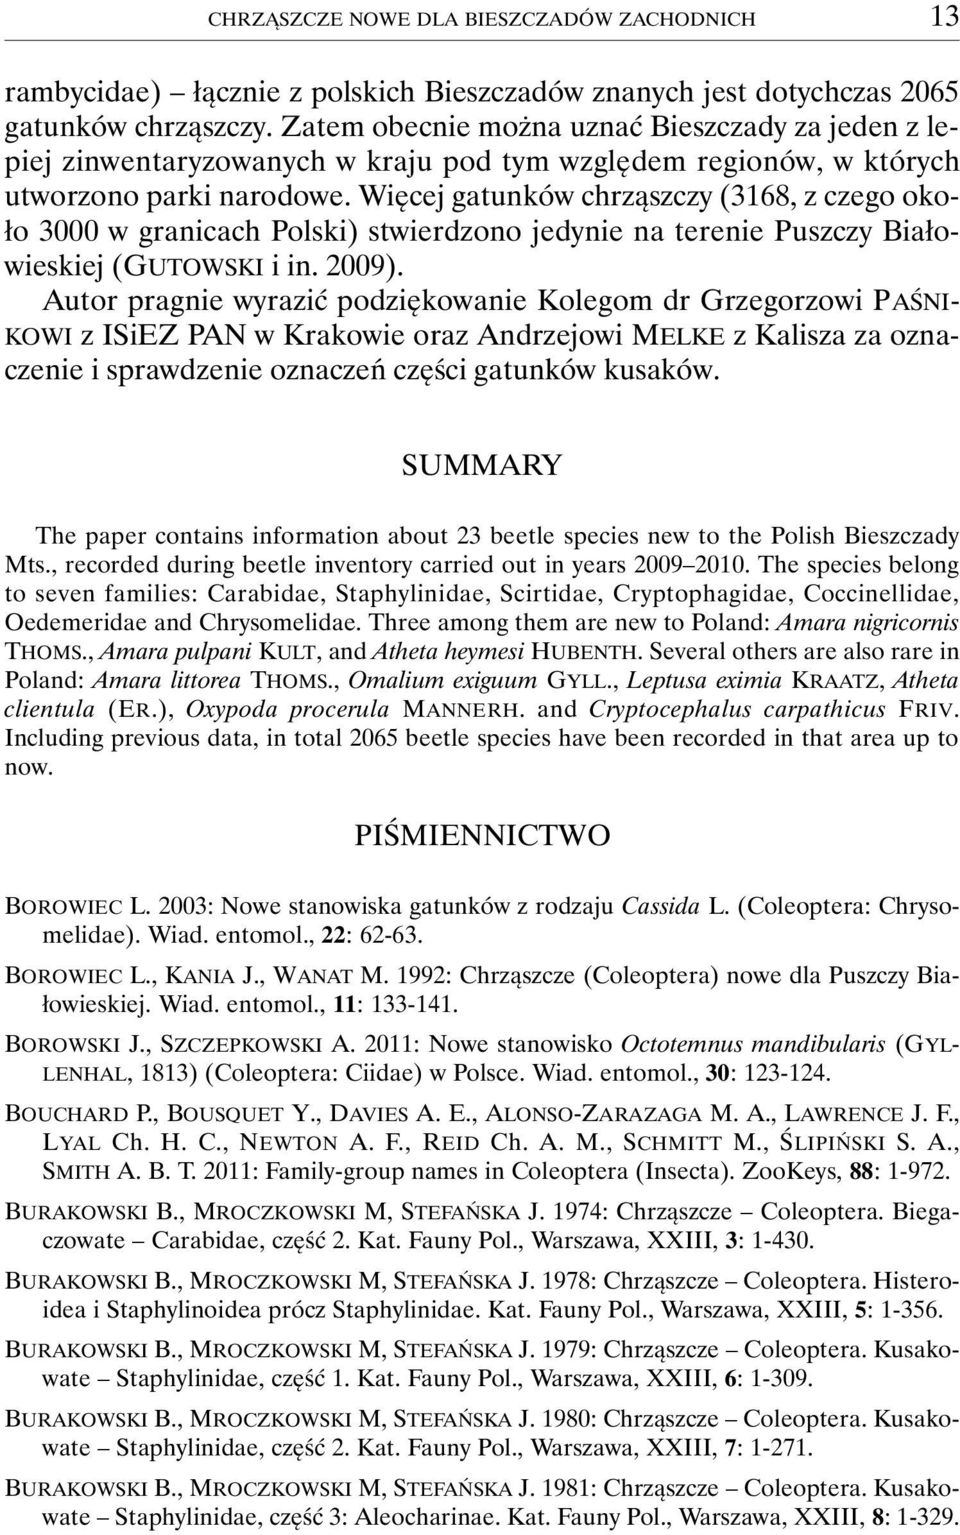 Więcej gatunków chrząszczy (3168, z czego około 3000 w granicach Polski) stwierdzono jedynie na terenie Puszczy Białowieskiej (GUTOWSKI i in. 2009).